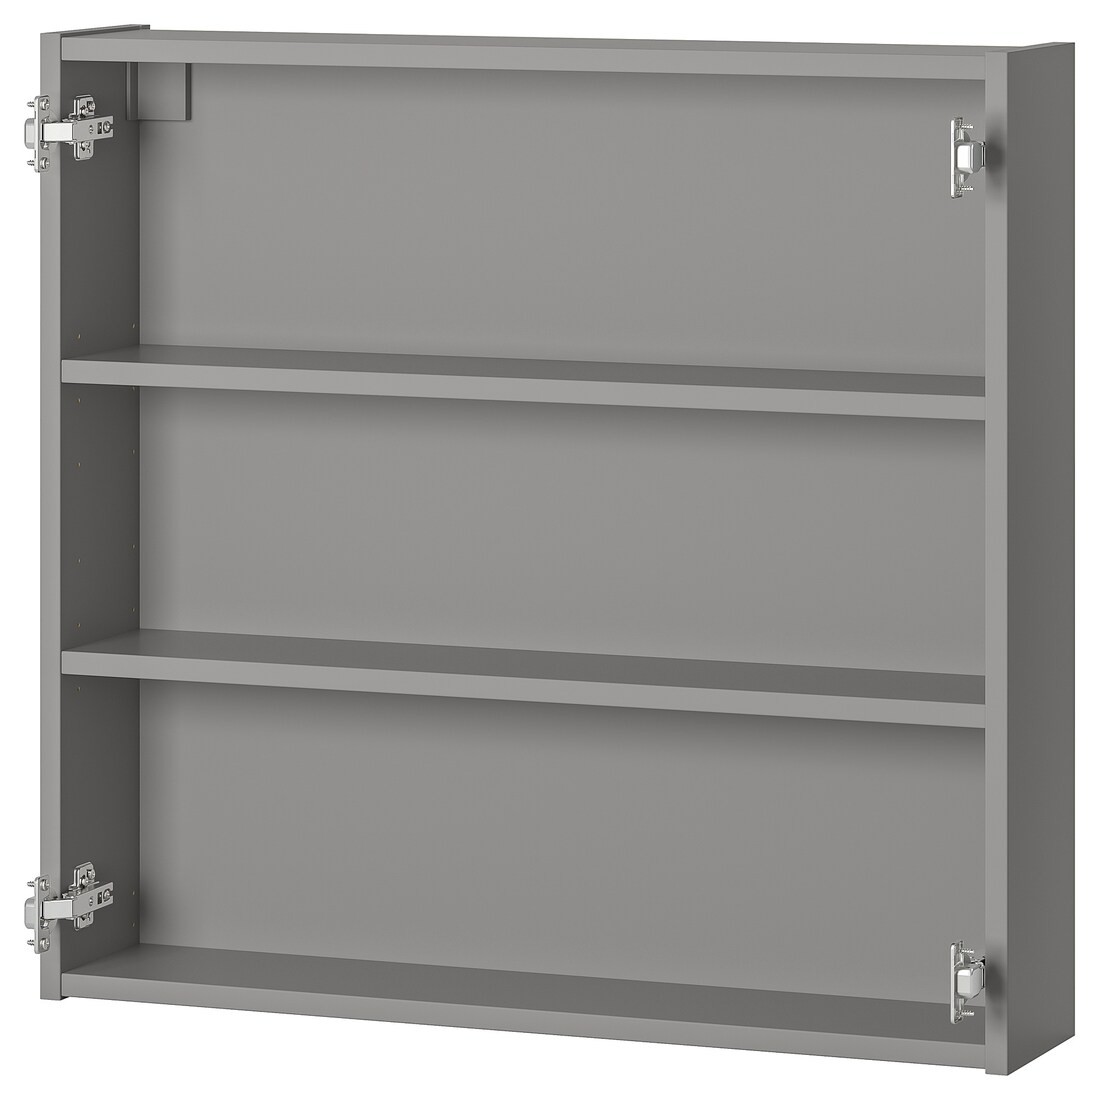 IKEA ENHET ЭНХЕТ Навесной шкаф с 2 полками, серый, 80x15x75 cм 30440451 | 304.404.51